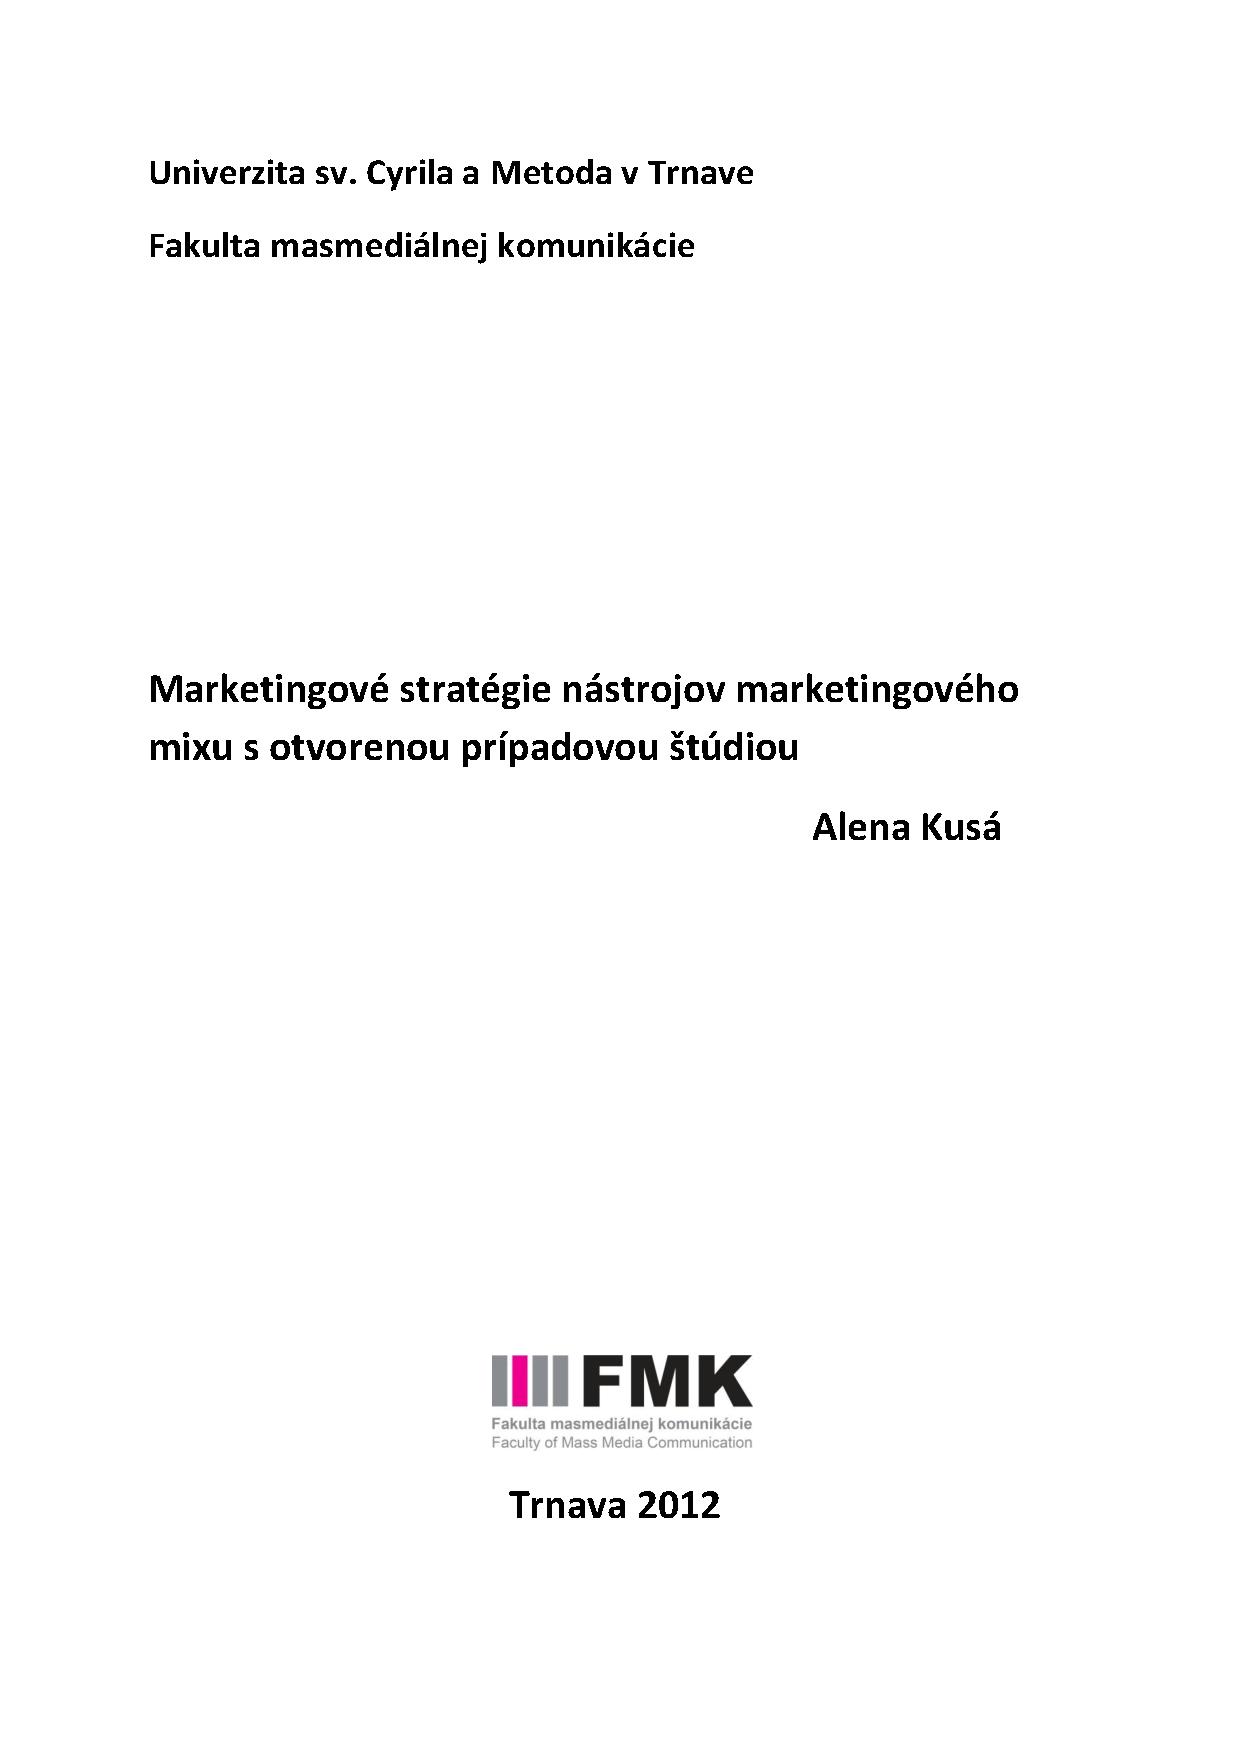 Marketingové stratégie nástrojov marketingového mixu s otvorenou prípadovou štúdiou 